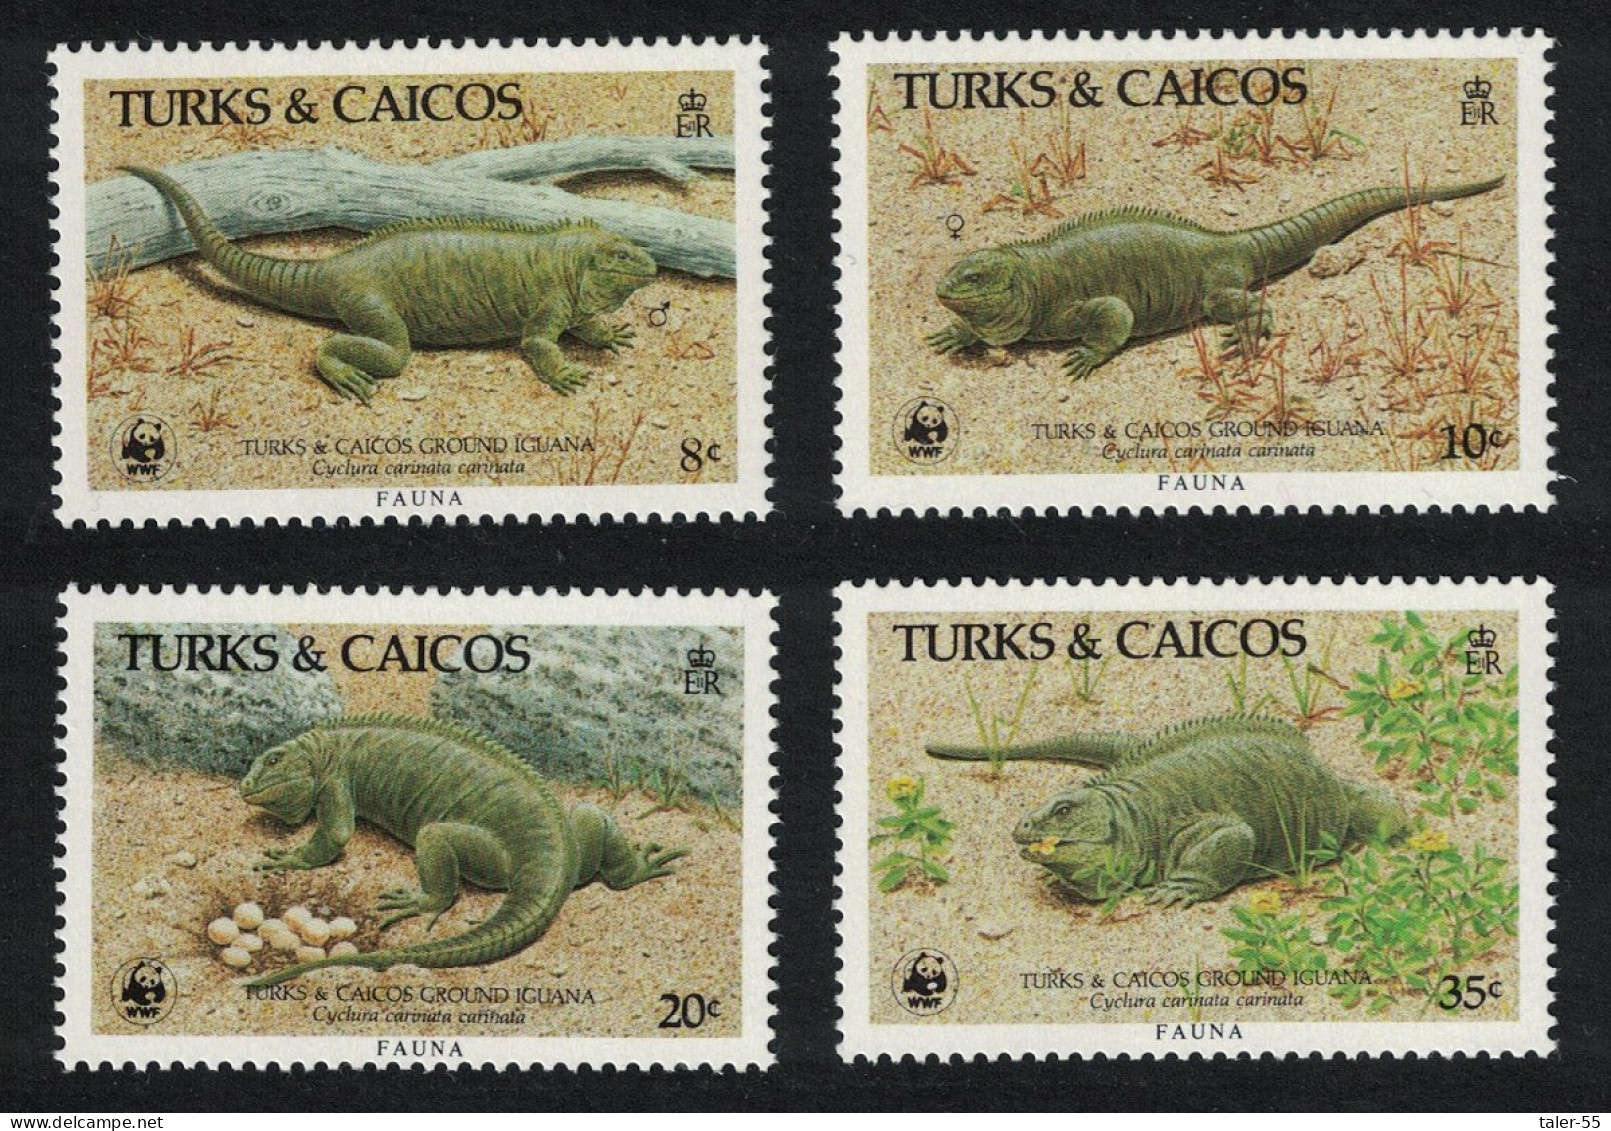 Turks And Caicos WWF Ground Iguana 4v 1986 MNH SG#888-891 MI#777-780 Sc#710-713 - Turks And Caicos